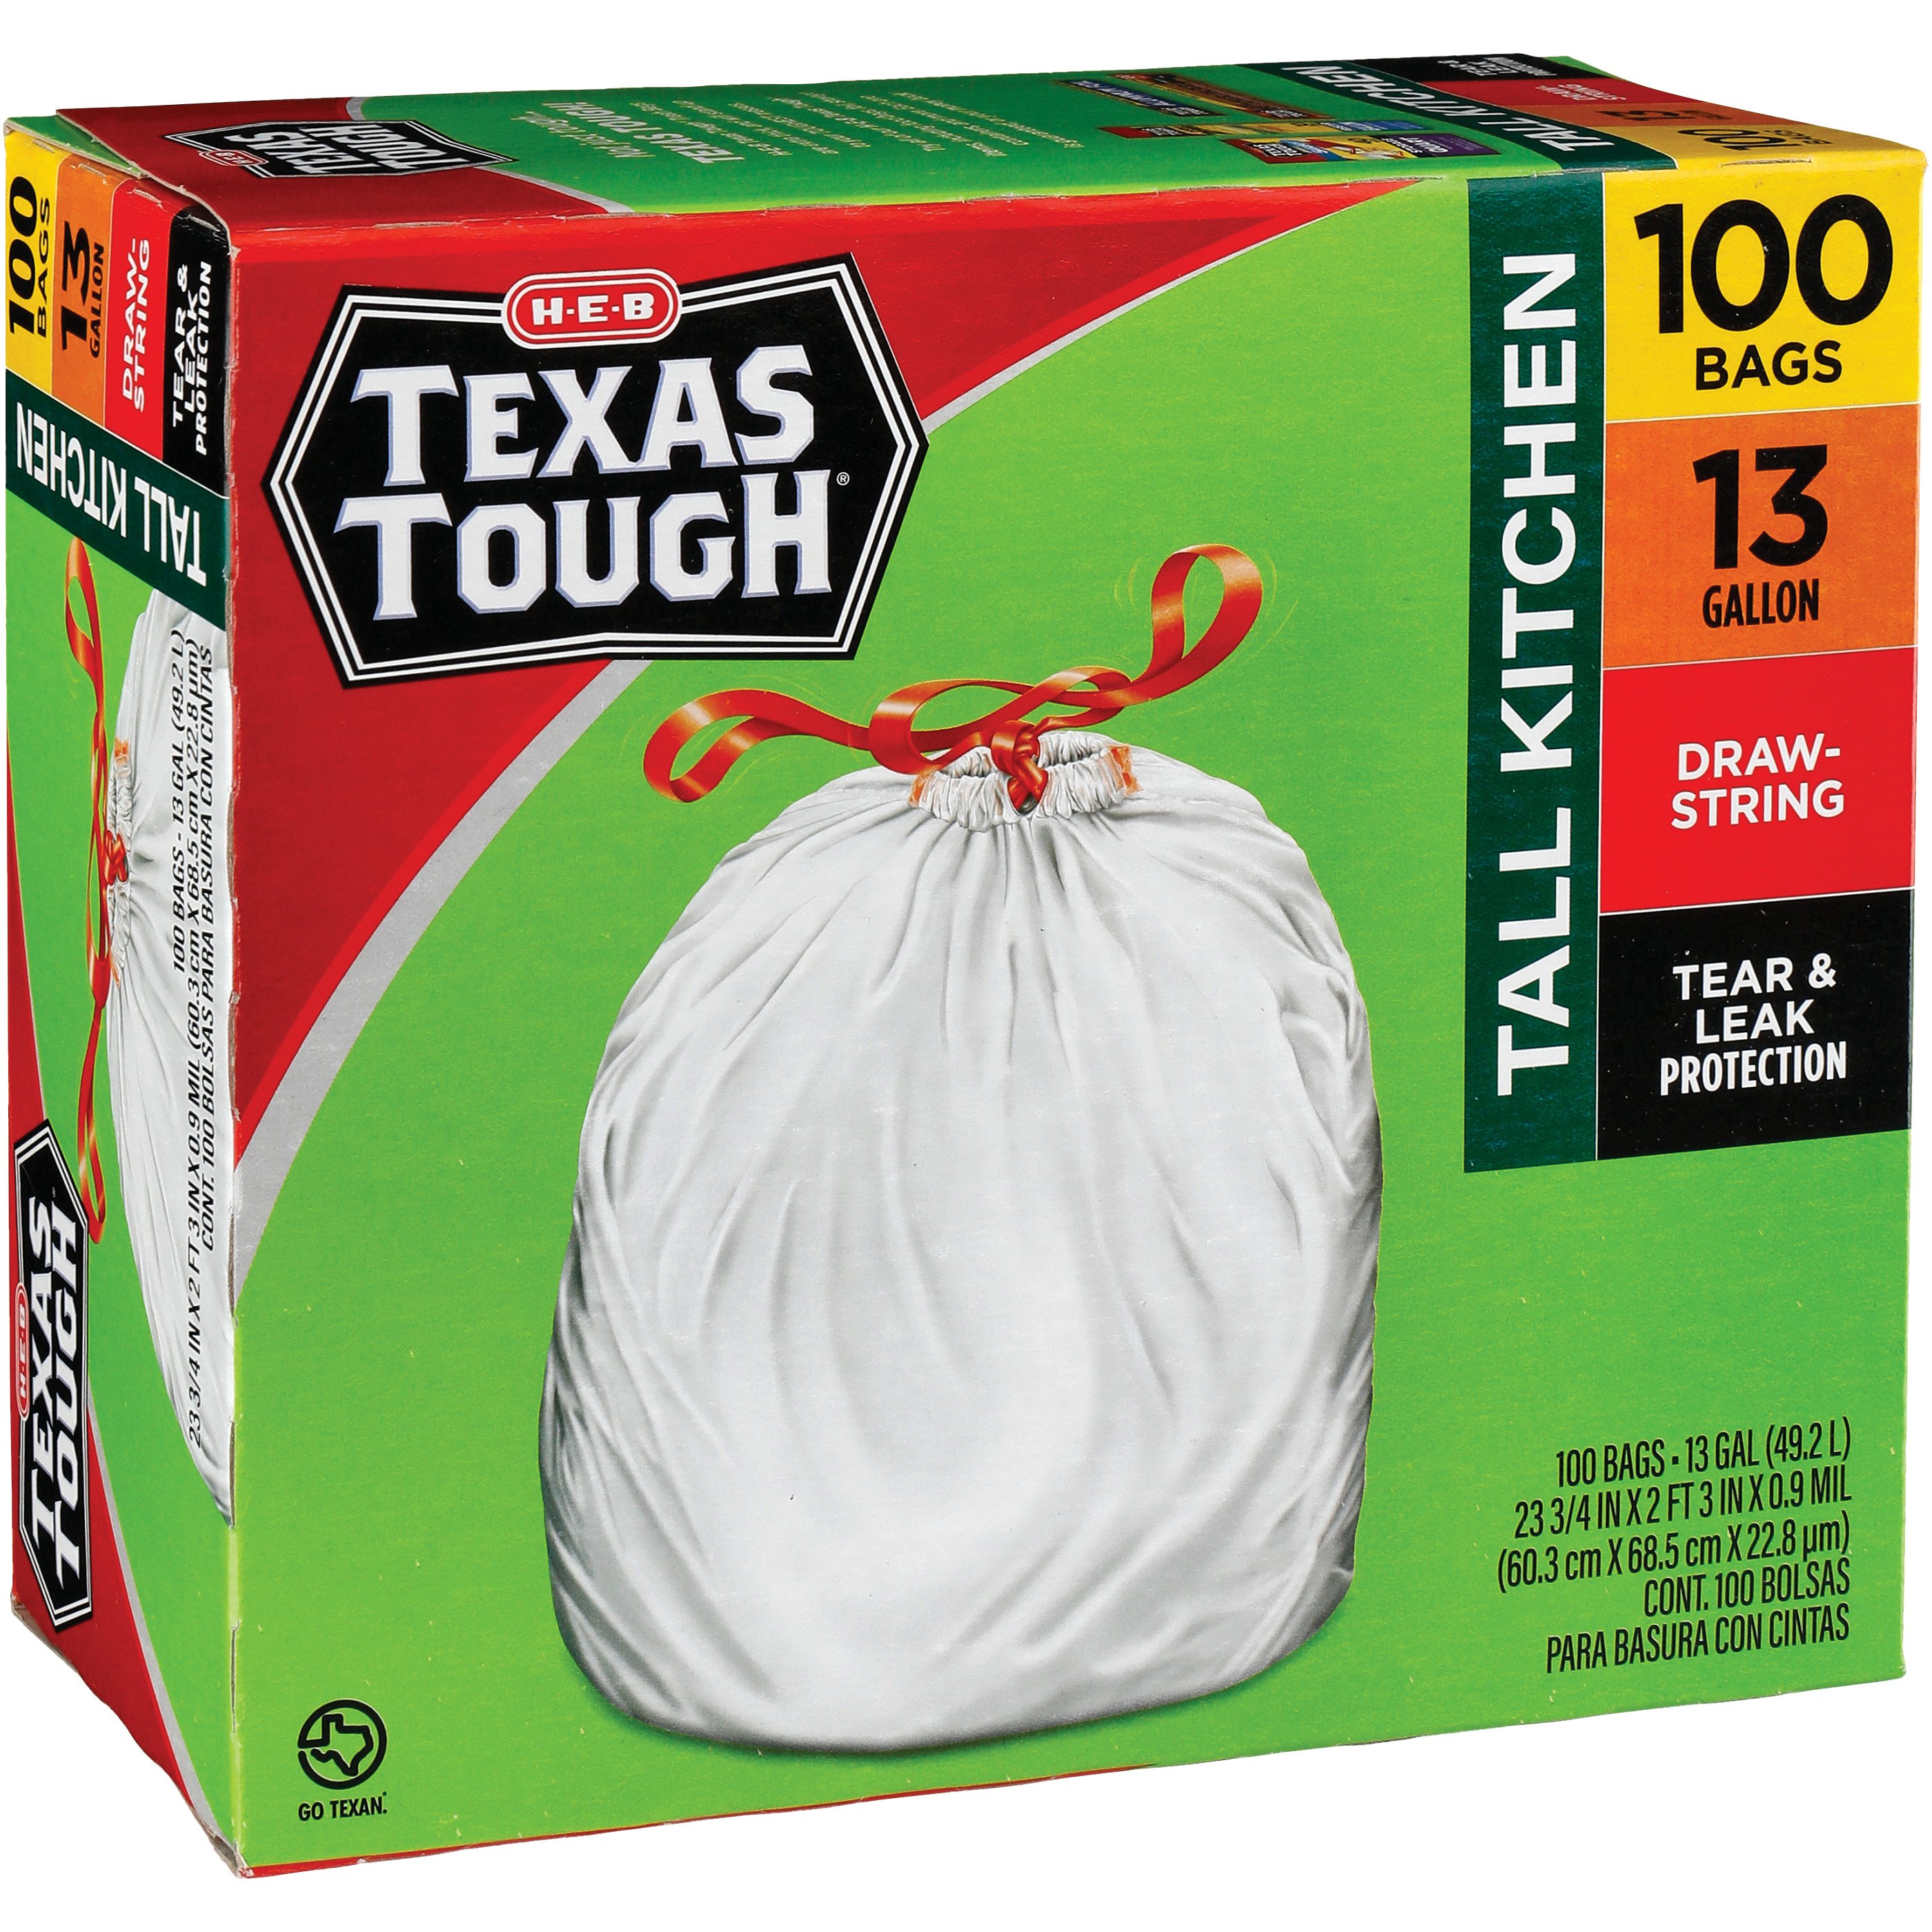 H-E-B Texas Tough Tall Kitchen Flex Trash Bags, 13 Gallon - Fresh